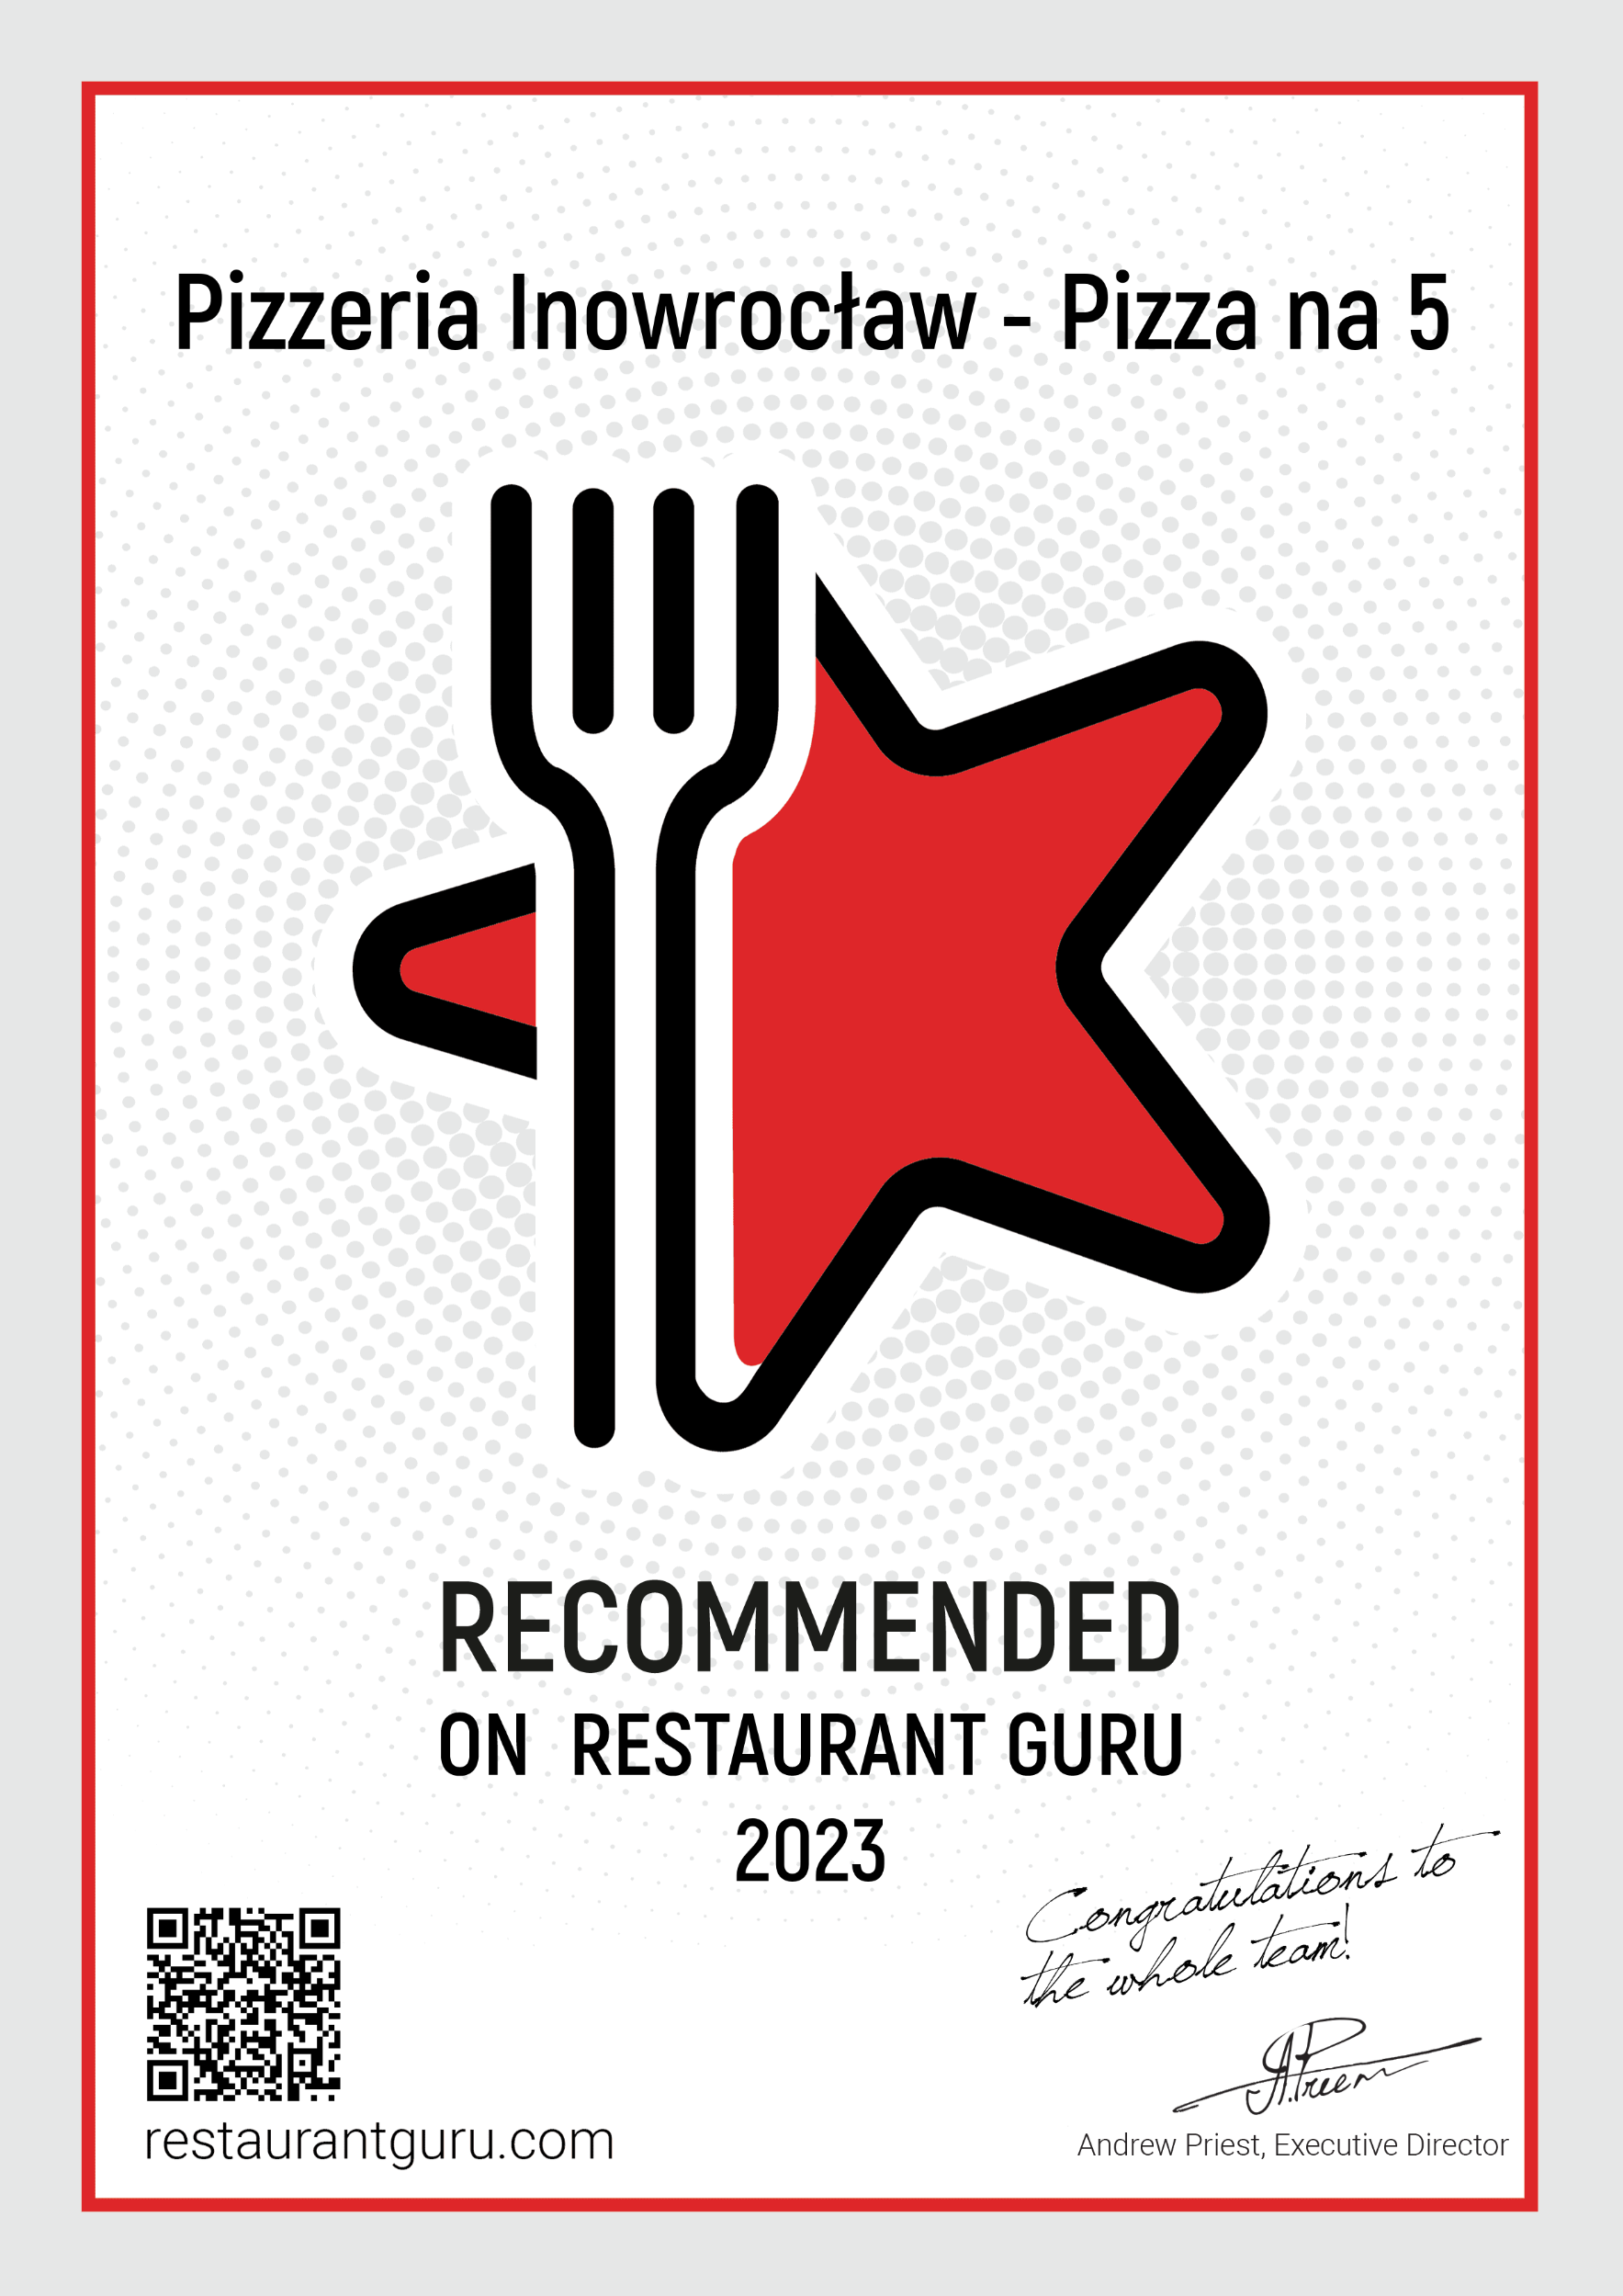 Certyfikat od Restaurant Guru rekomendujący Pizza na 5